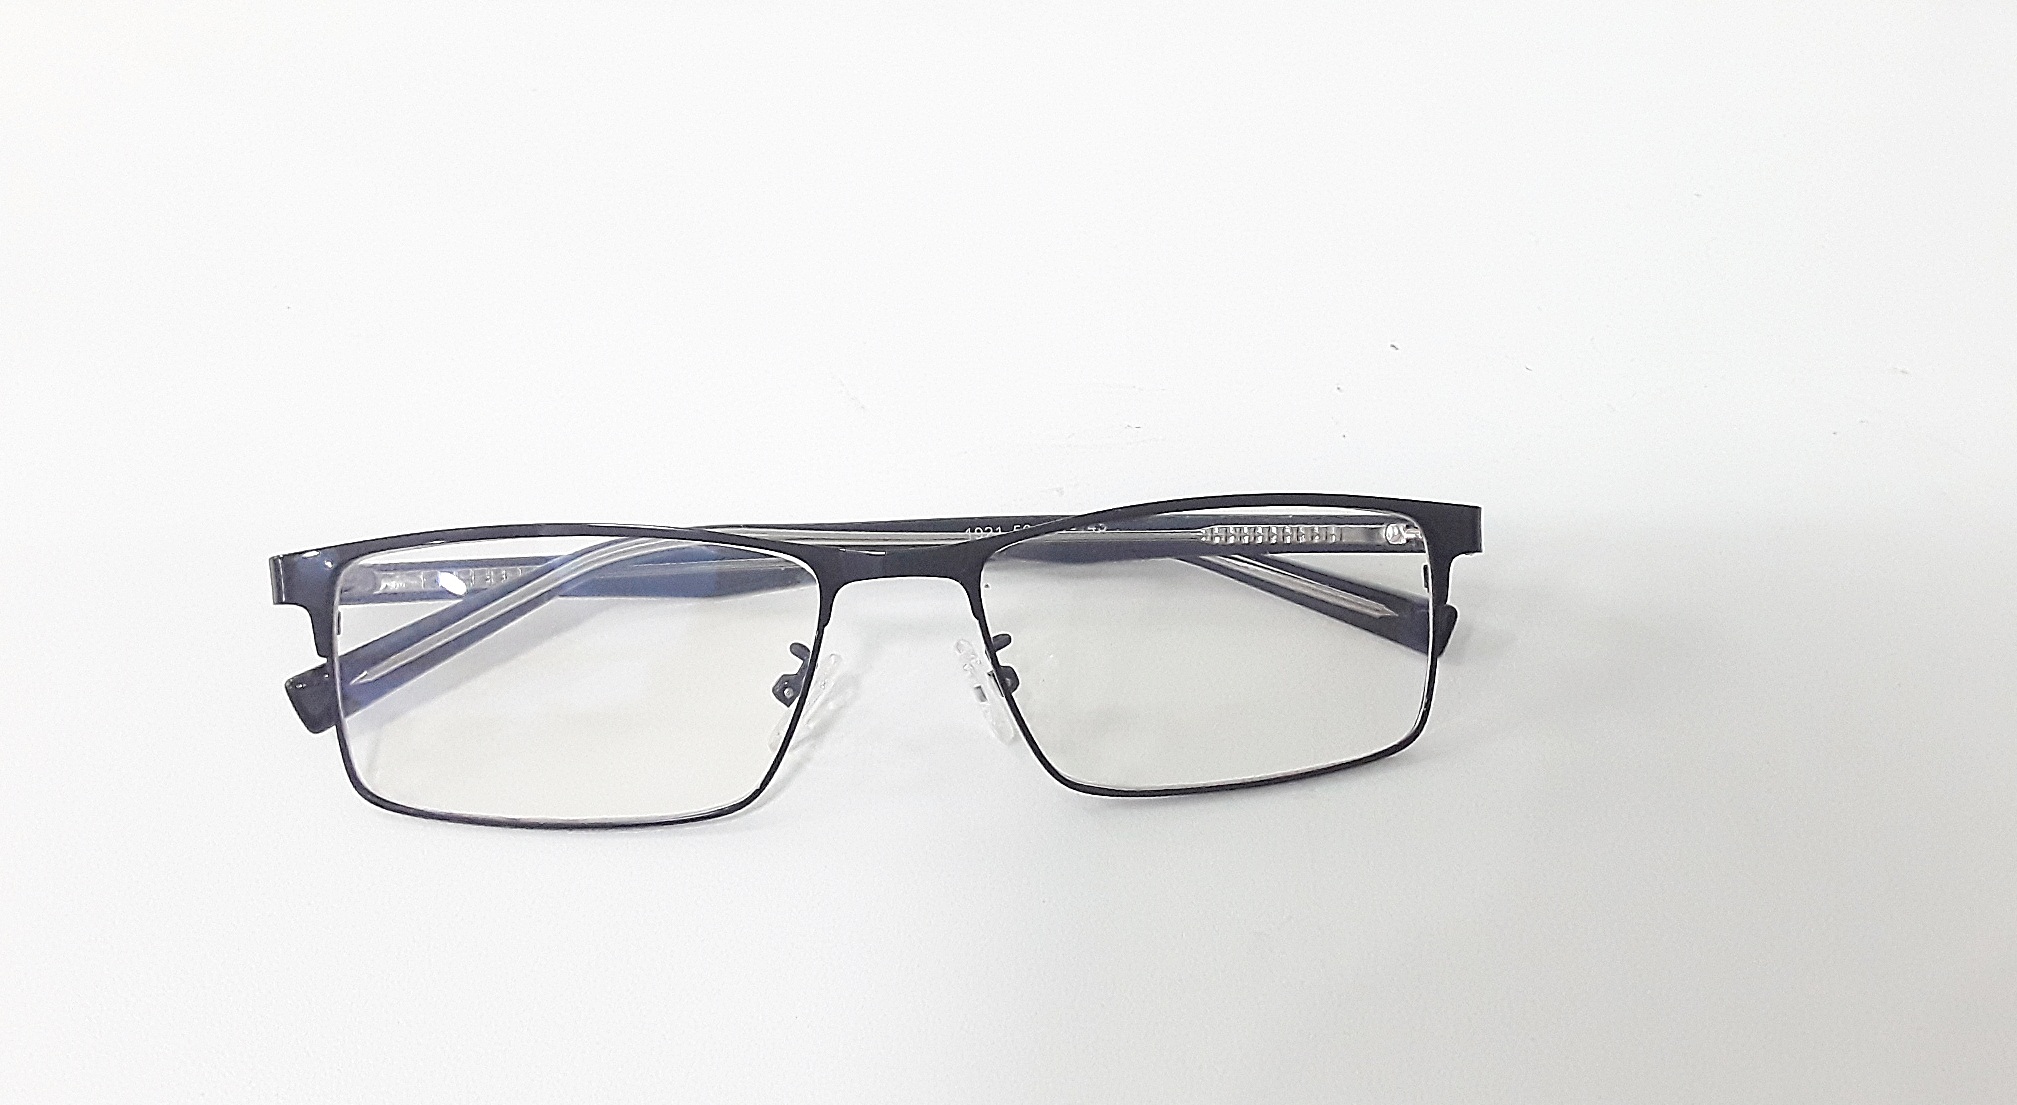 แว่นสายตายาว แว่นตาอ่านหนังสือ แว่นตา แว่นสายตา ตัดแว่น แว่นตัด กรอบพร้อมเลนส์ตัด เลนส์มัลติโค้ต กรองแสง คมชัดมาตรฐาน กรอบ 1921 ดำ